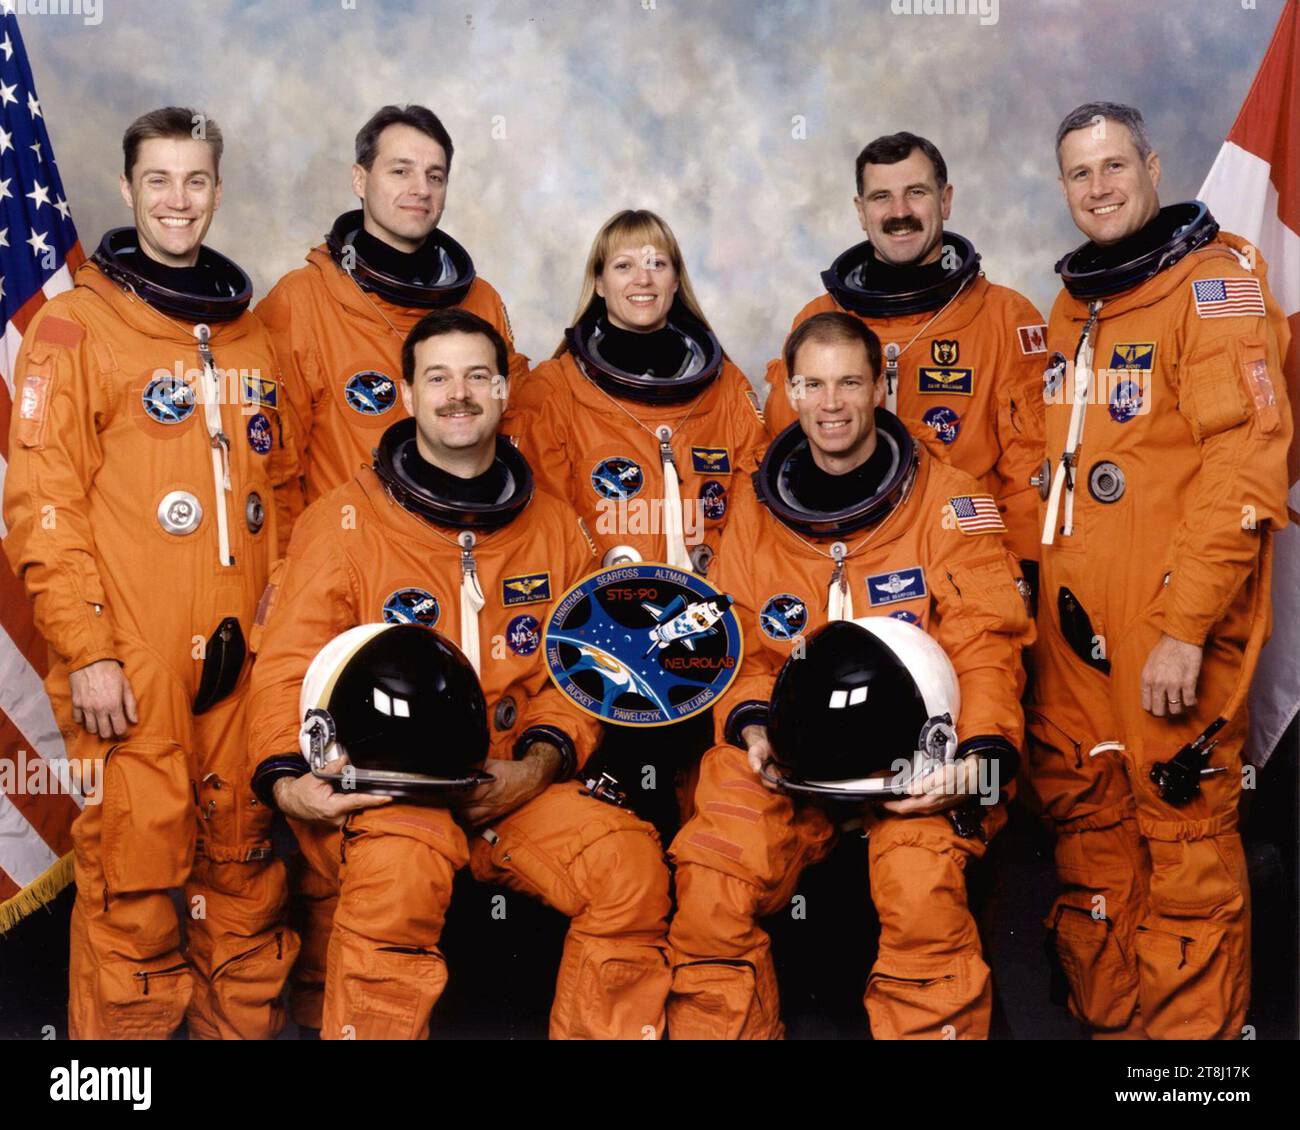 Crew-Porträt. STS-90 wurde am 17. April 1998 gestartet. Die Astronauten Richard A. Searfoss, Kommandeur (rechts), und Scott D. Altman, Pilot (links vorn). Weitere Besatzungsmitglieder (hintere Reihe, von links nach rechts) sind James A. Pawelczyk, Ph.D., Payload-Spezialist, und die Astronauten Richard M. Linnehan, Kathryn P. Hire und Dafydd R. (Dave) Williams, alle Missionsspezialisten, sowie der Payload-Spezialist Jay C. Buckey, Jr., MD. Stockfoto